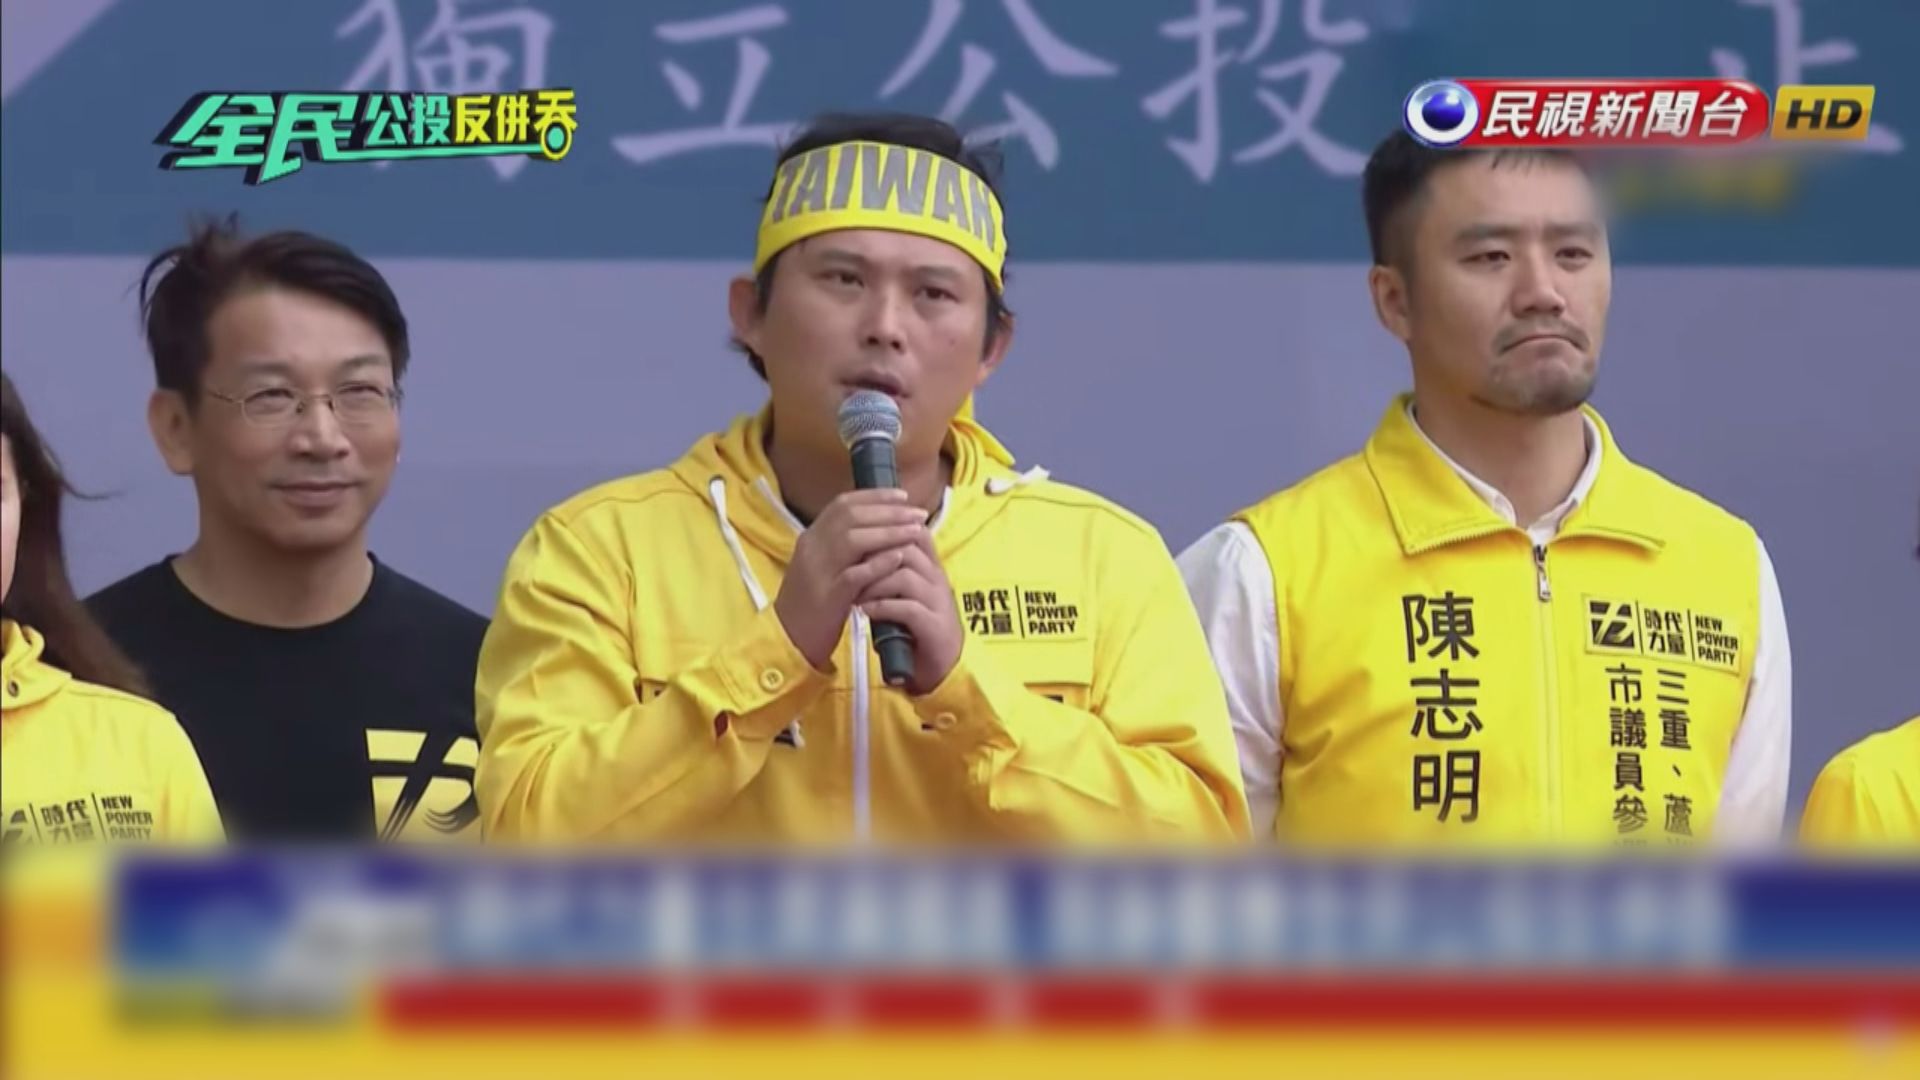 要求台灣公投正名團體舉行集會